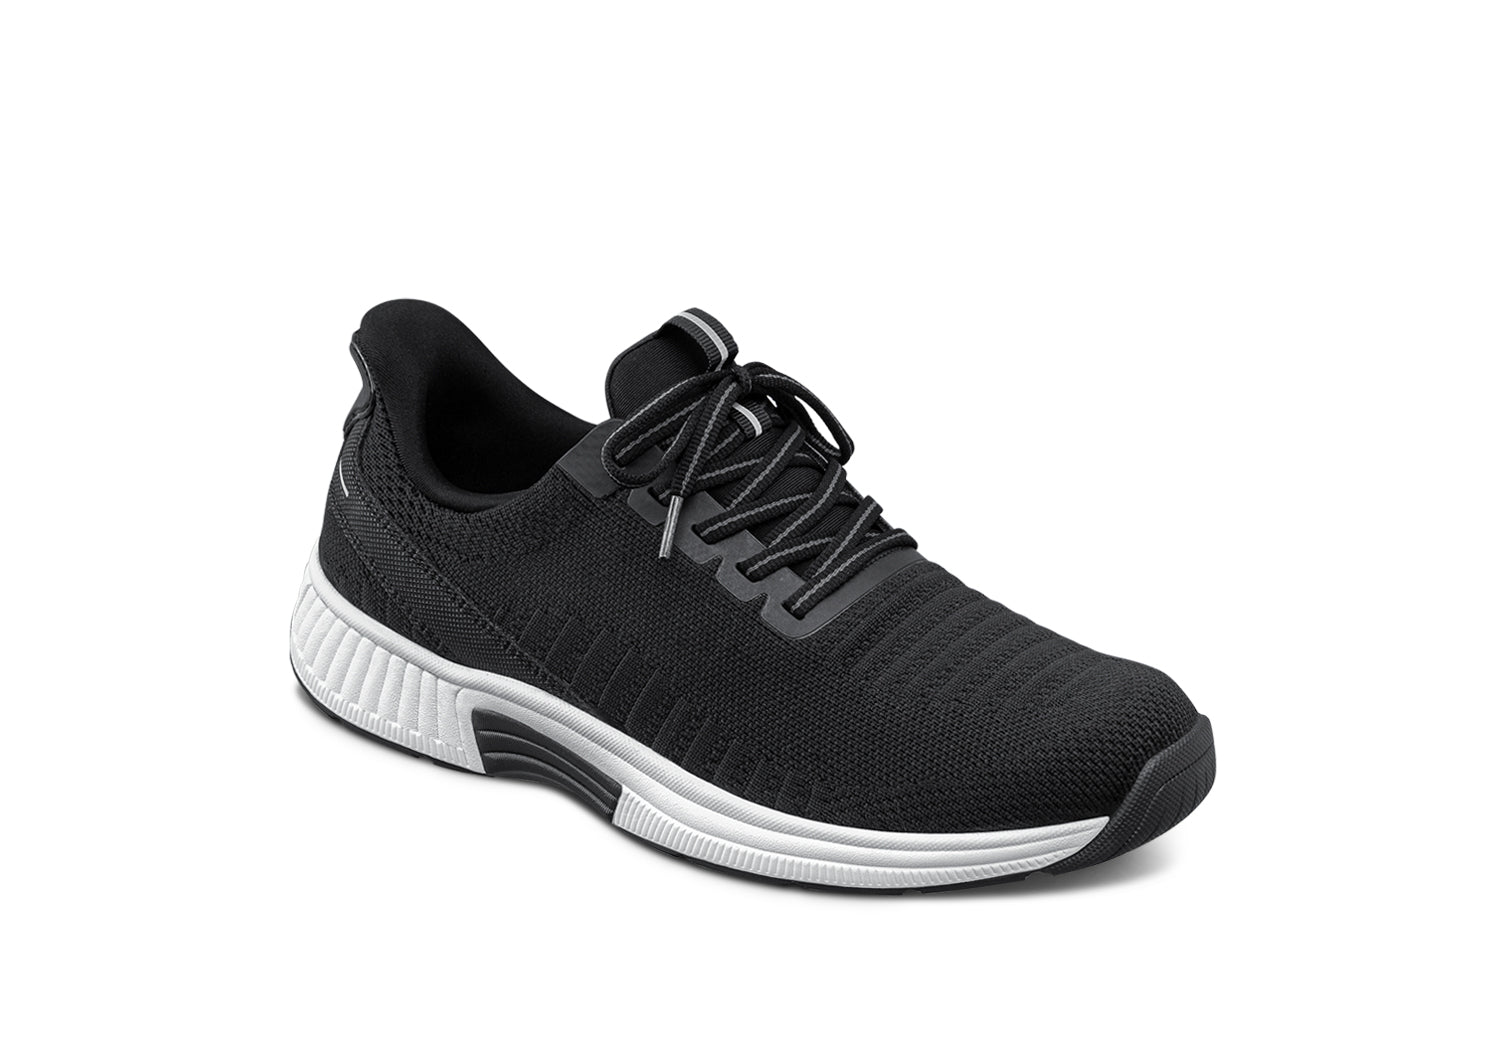 Ergonomic Stretch Comfort Shoes – The OrthoFit - Premium